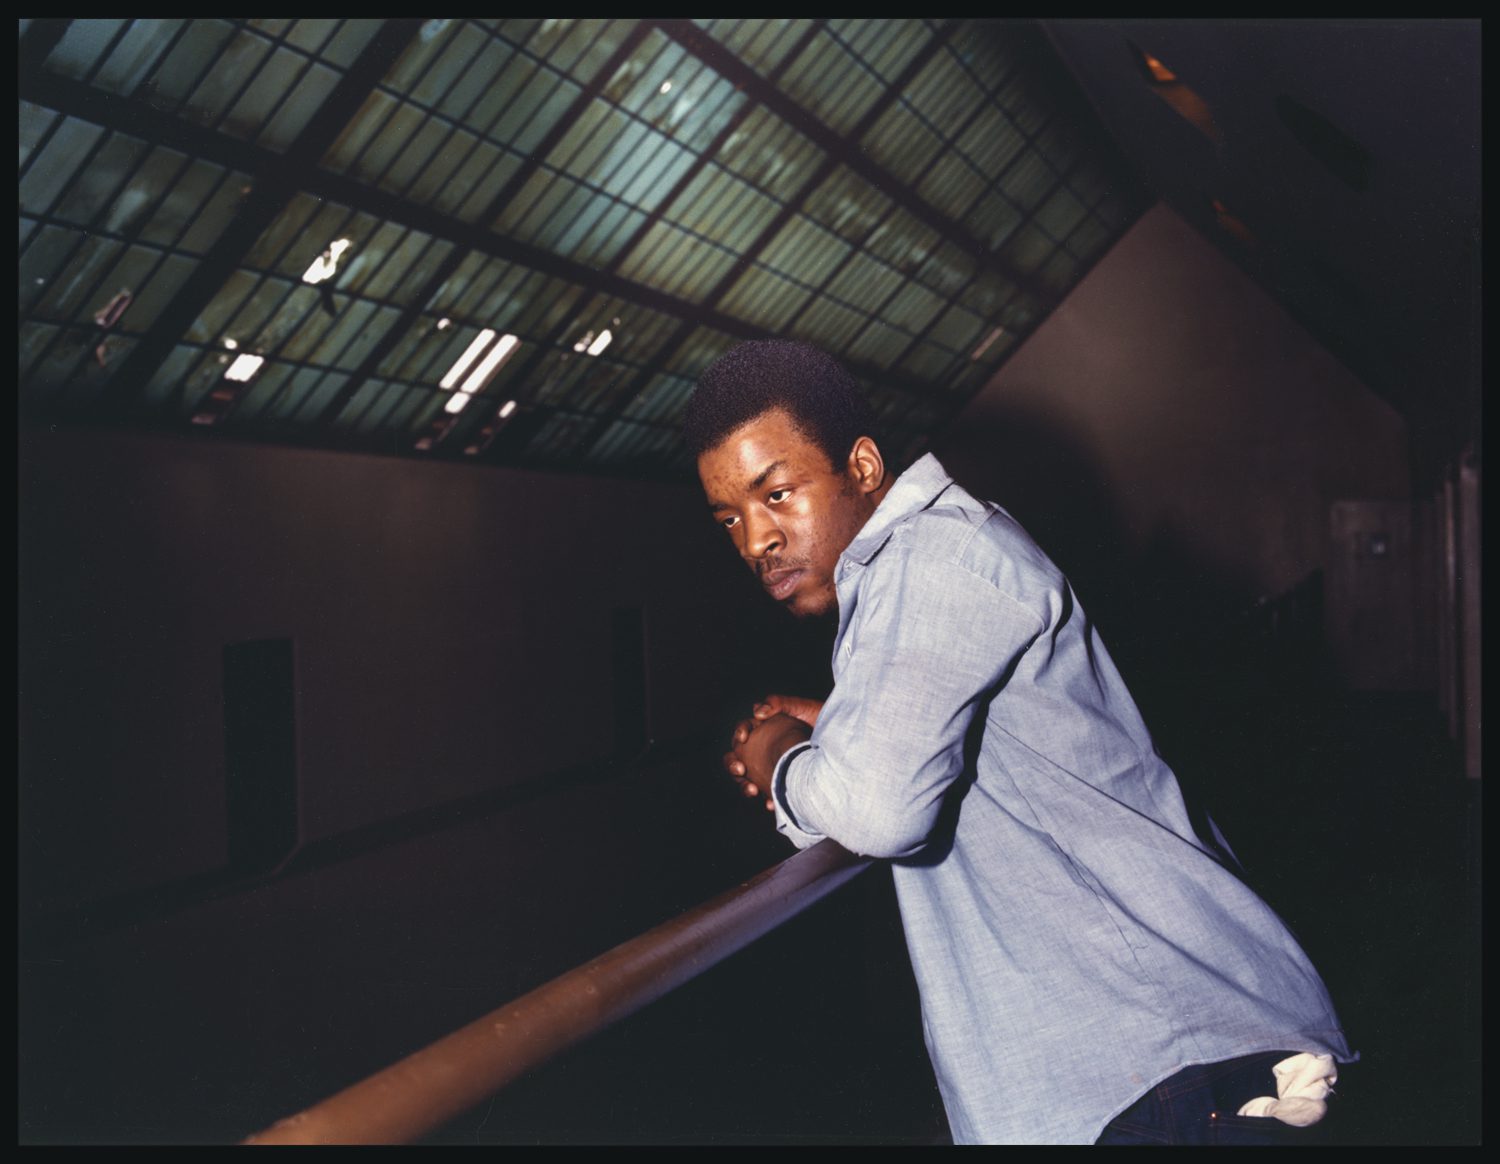 An incarcerated man leans on a balcony rail